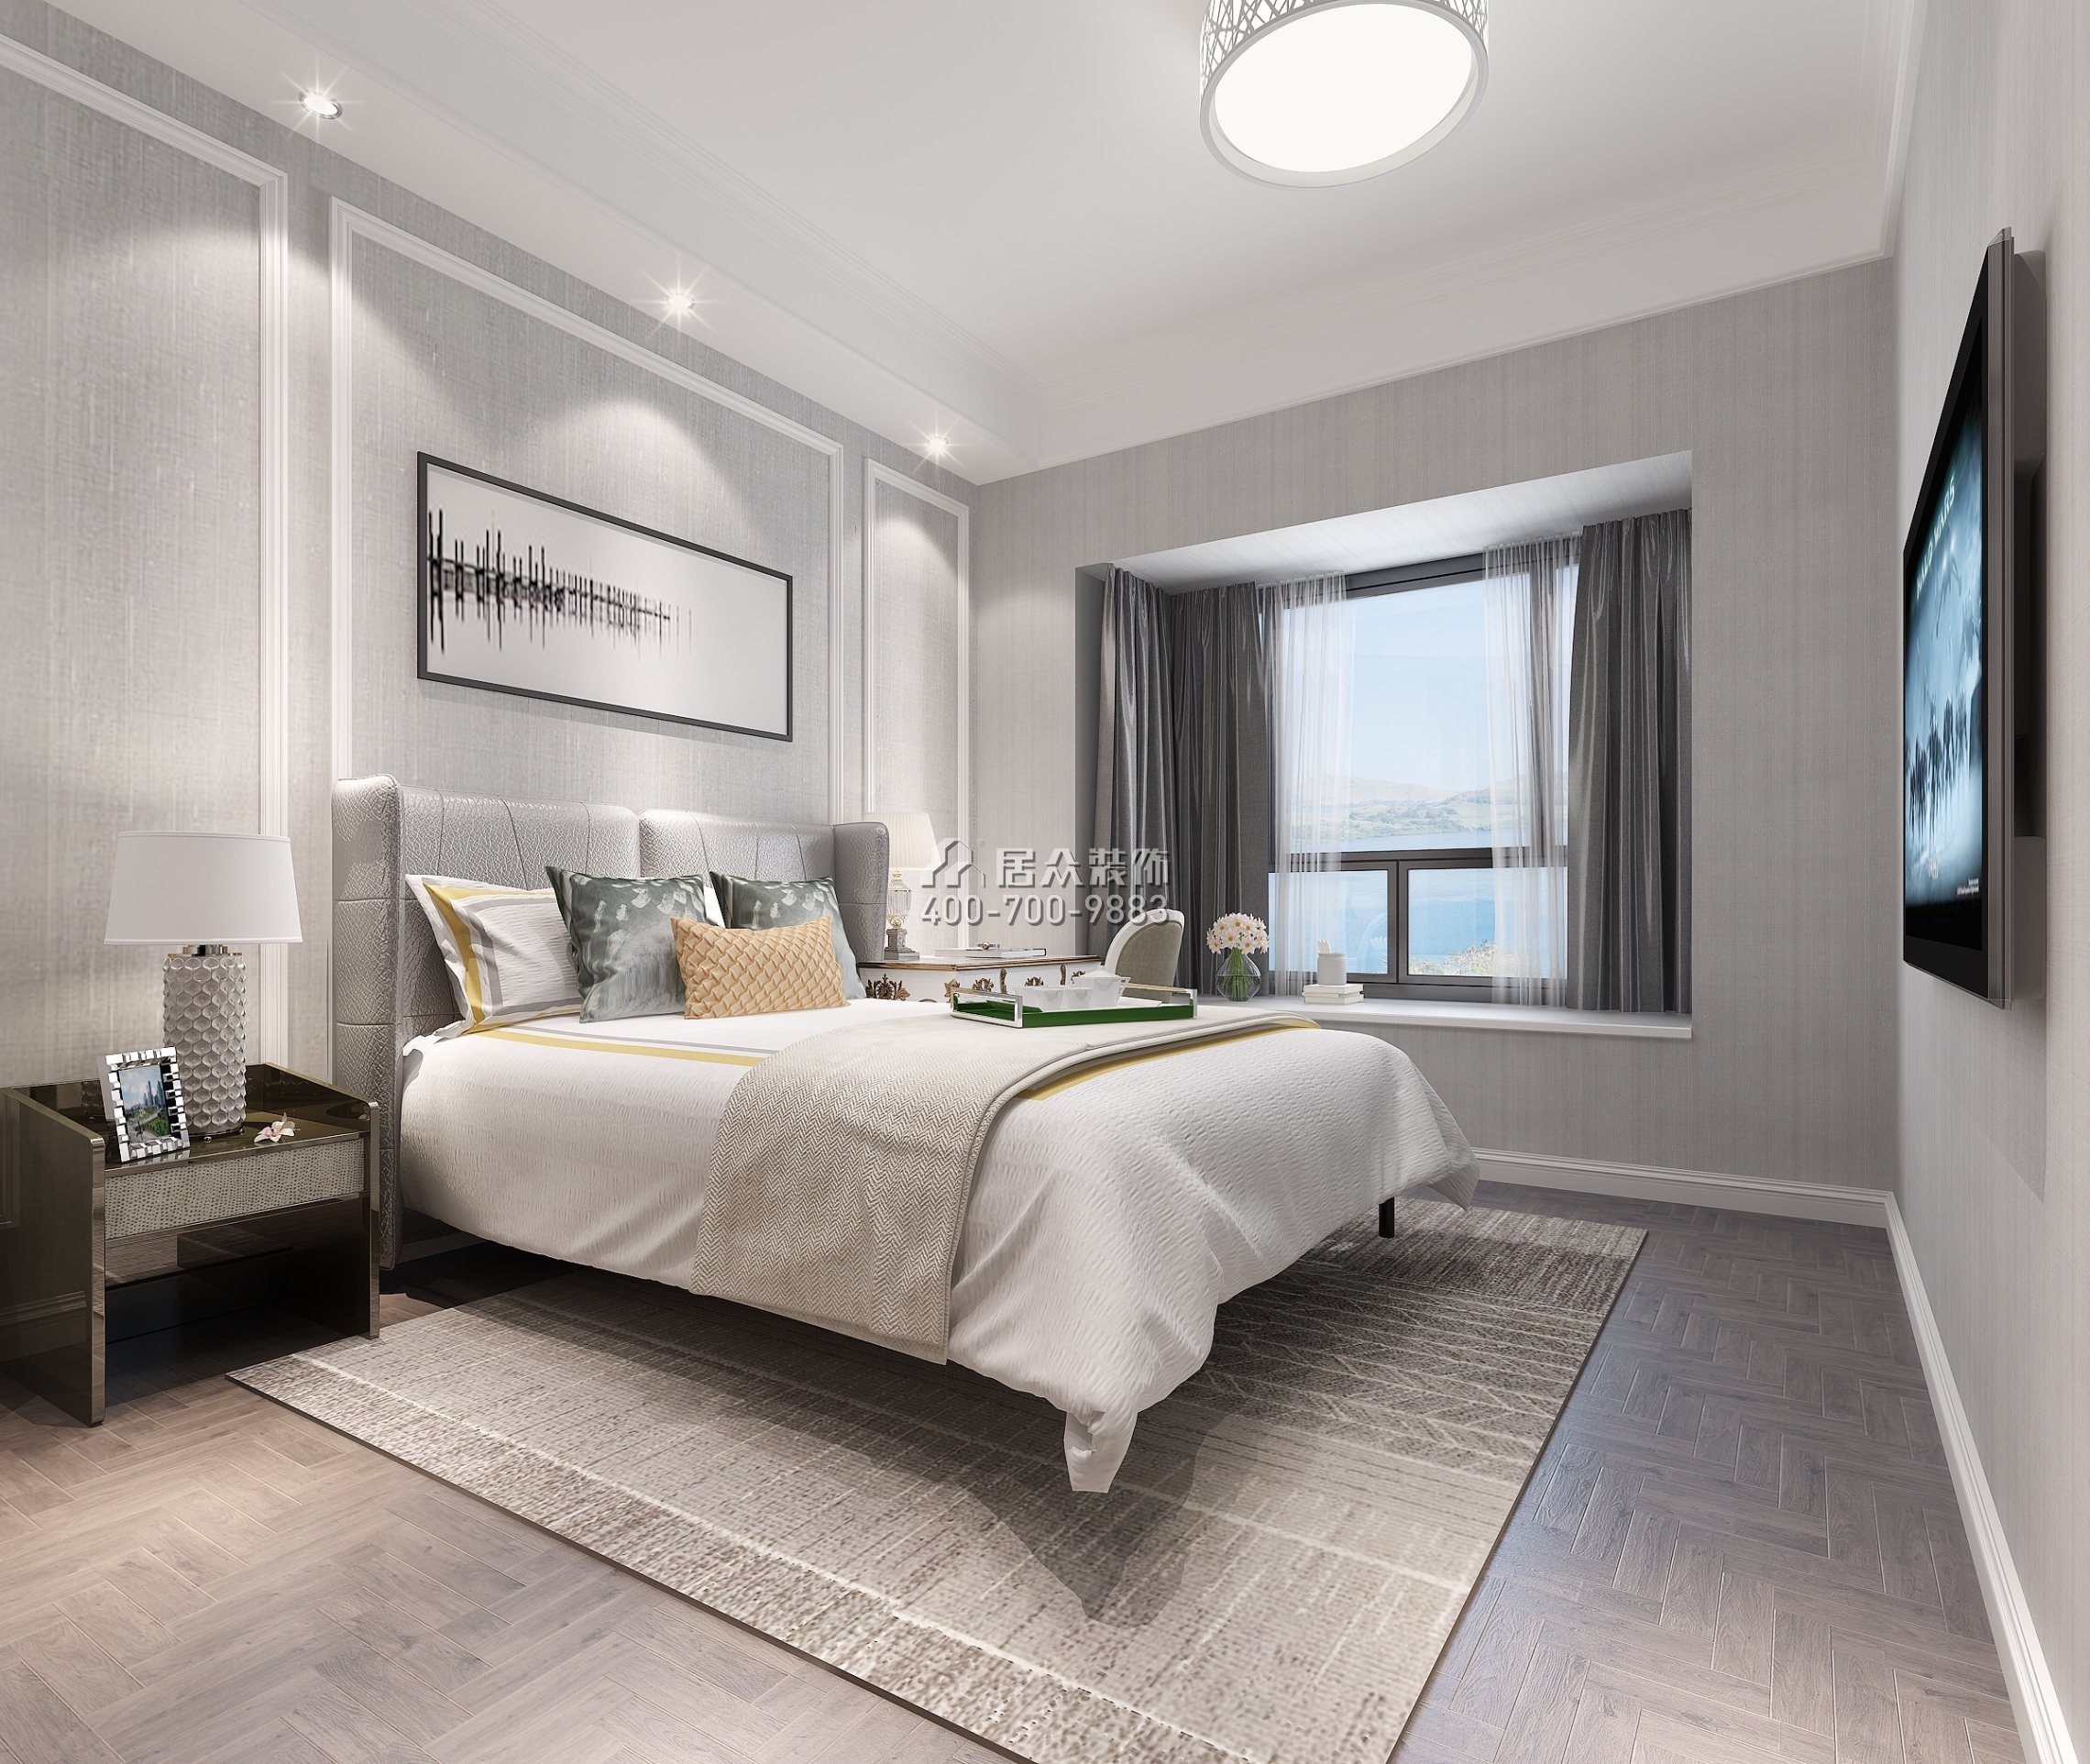 惠阳恒大棕榈岛108平方米欧式风格平层户型卧室装修效果图